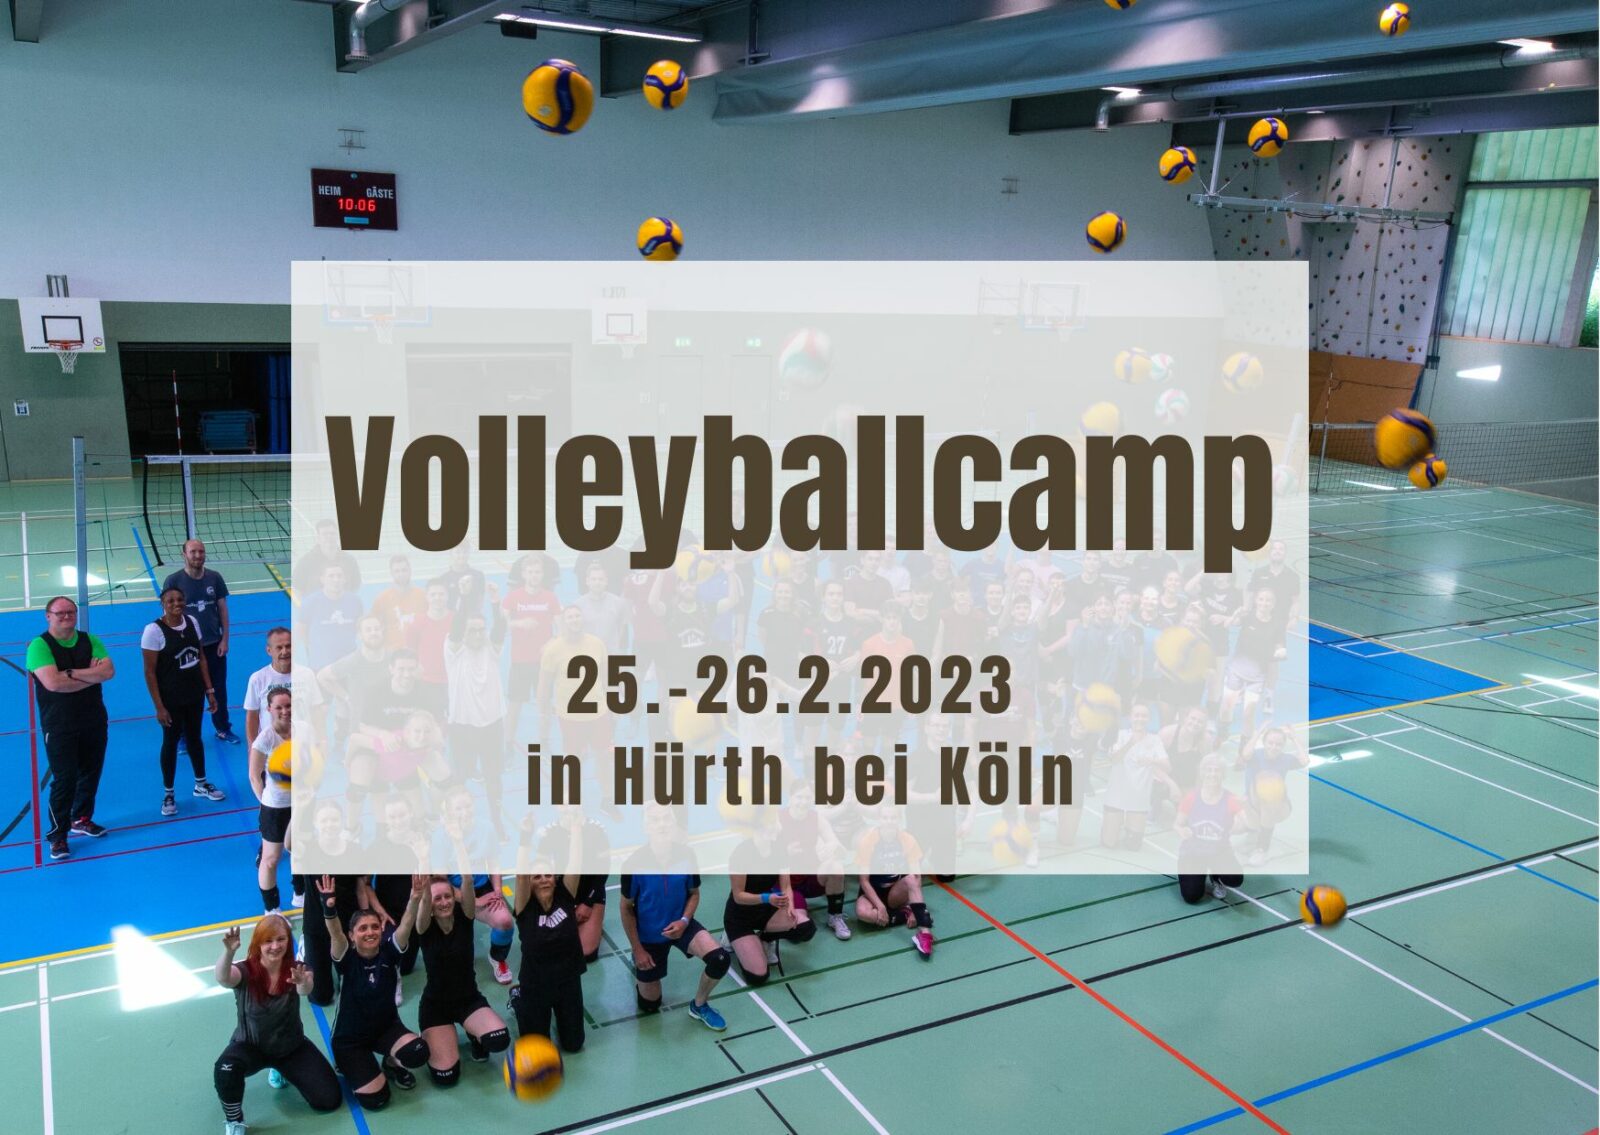 Volleyballcamp 25.-26.2.2023 in Hürth bei Köln